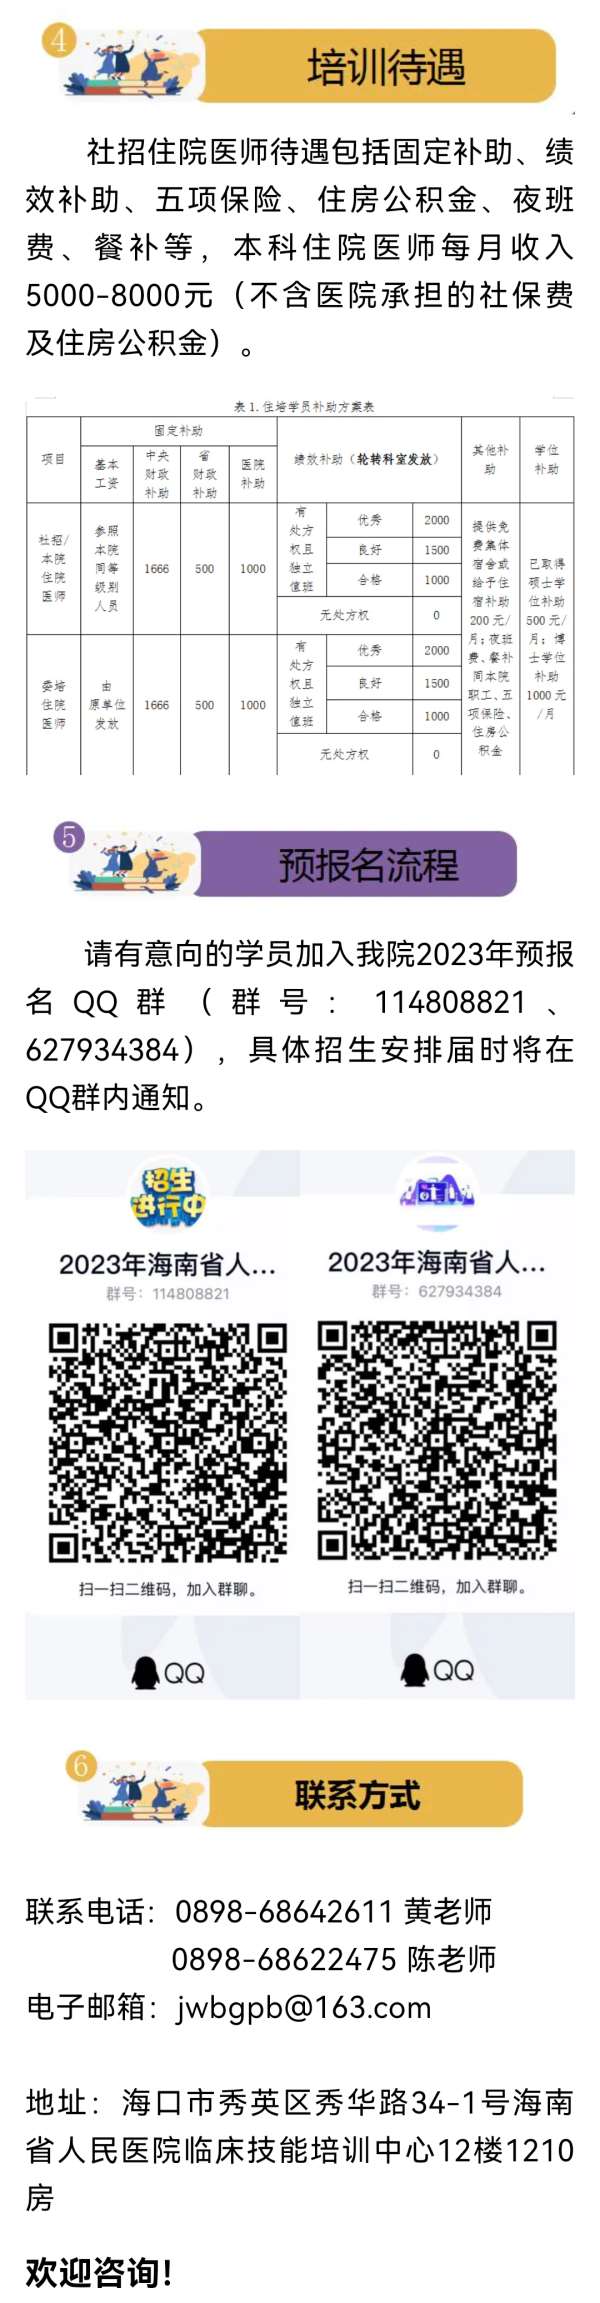 海南省人民医院2023年住院医师规范化培训招生简章